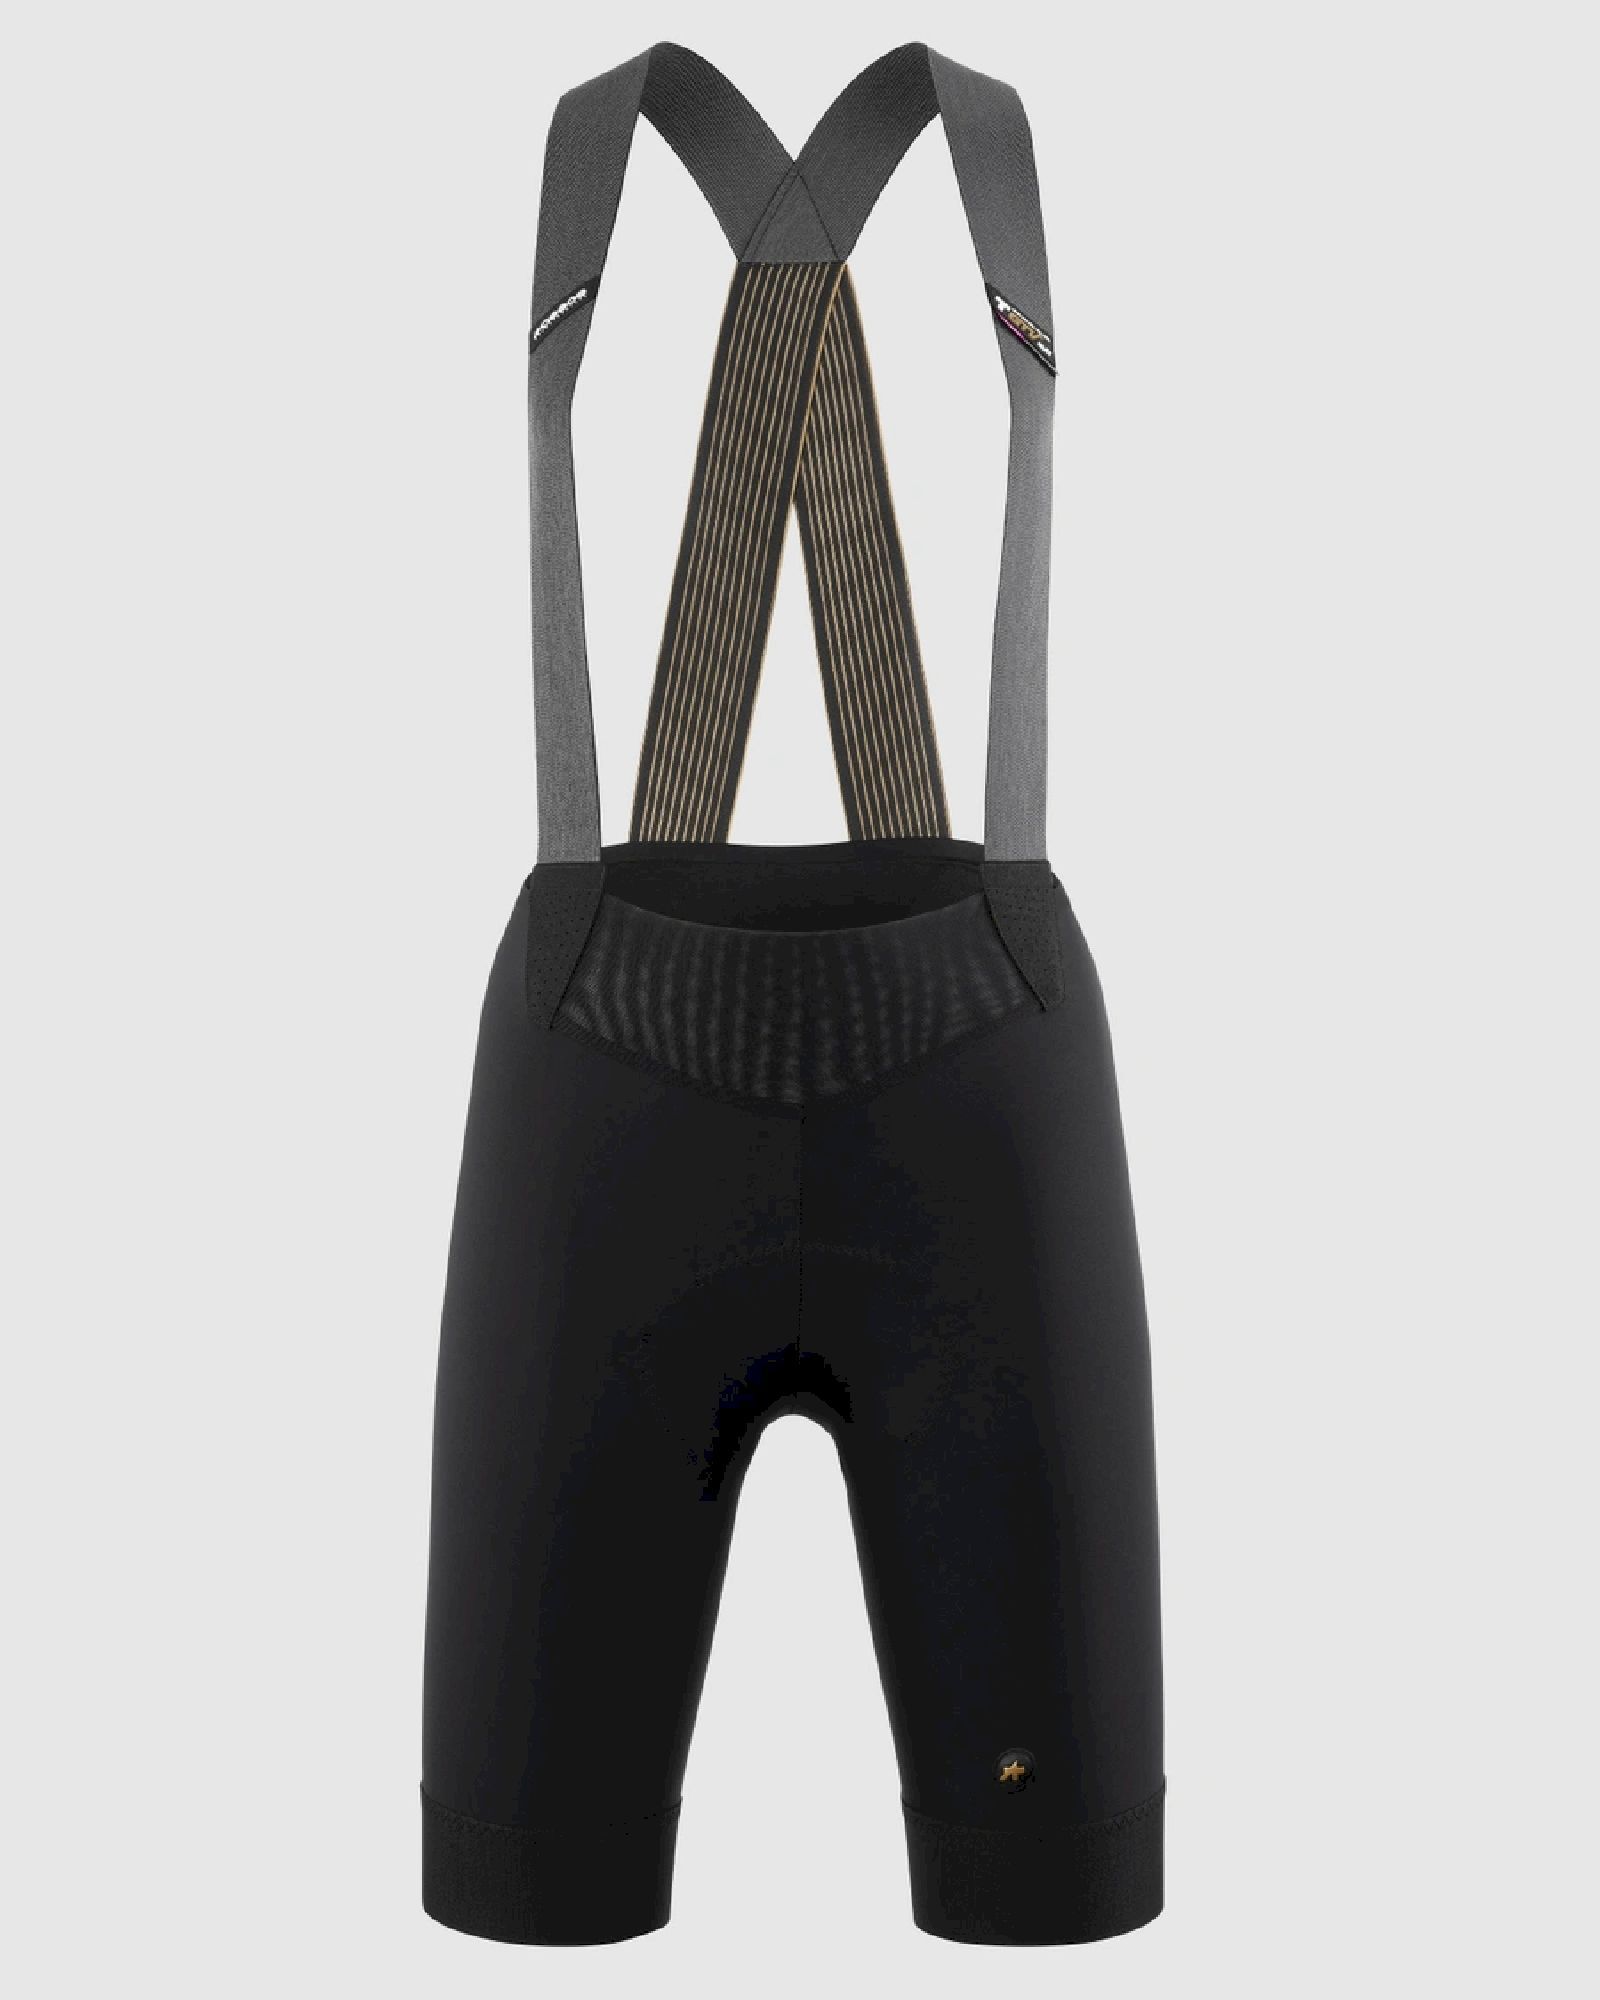 Assos UMA GTV Bib Shorts C2 EVO - Cycling shorts - Women's | Hardloop